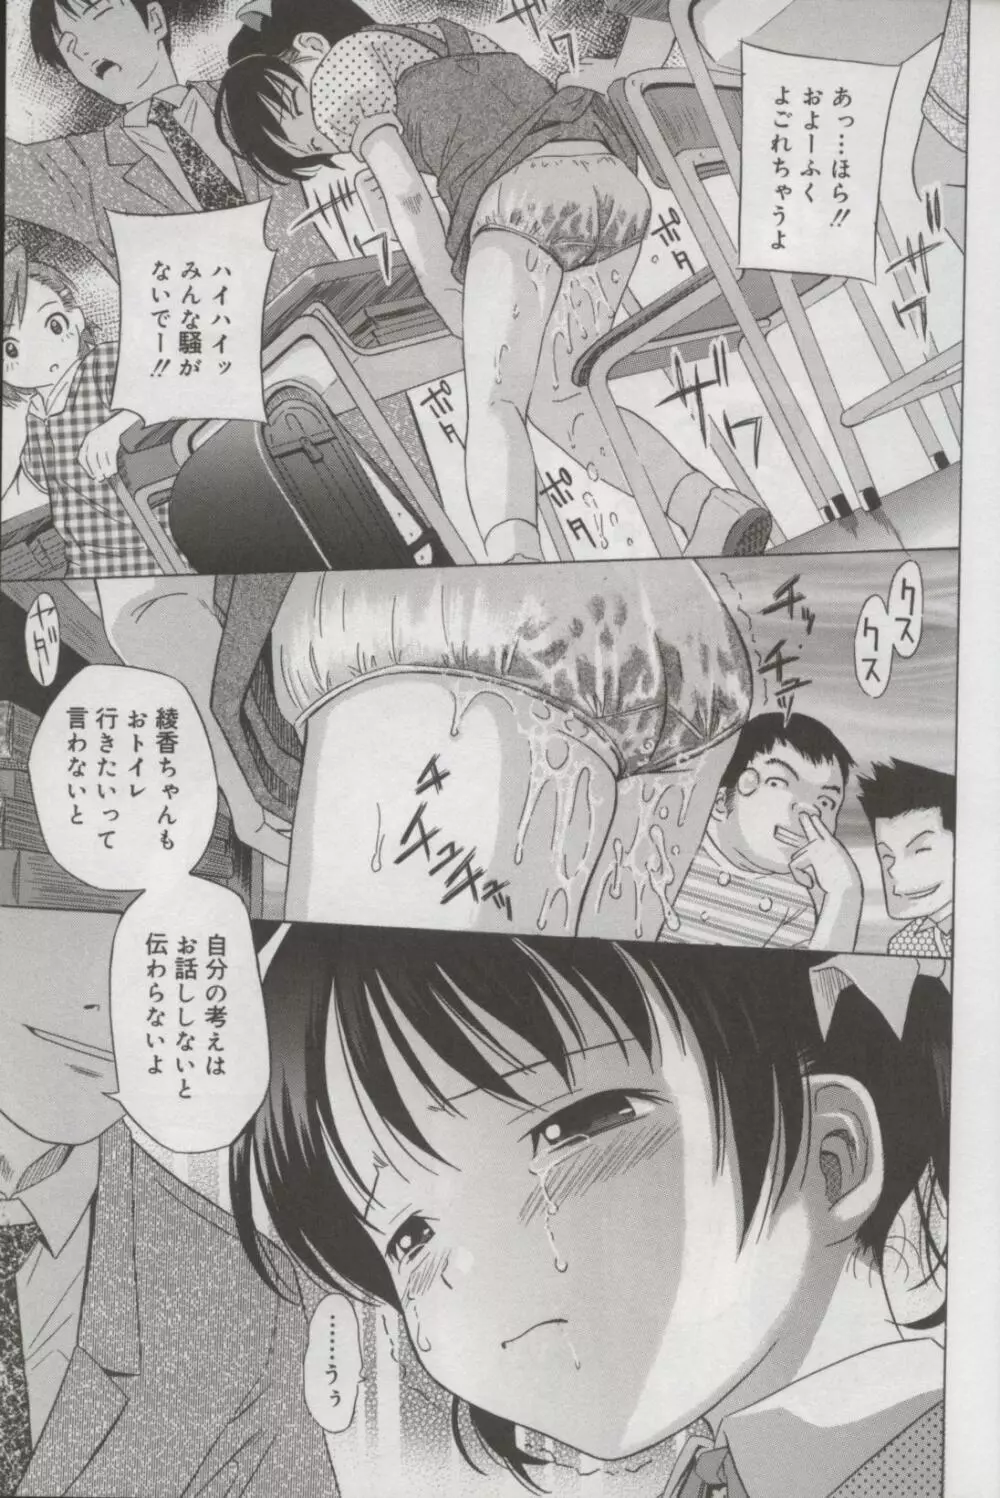 Kotori-kan Vol 3 6ページ